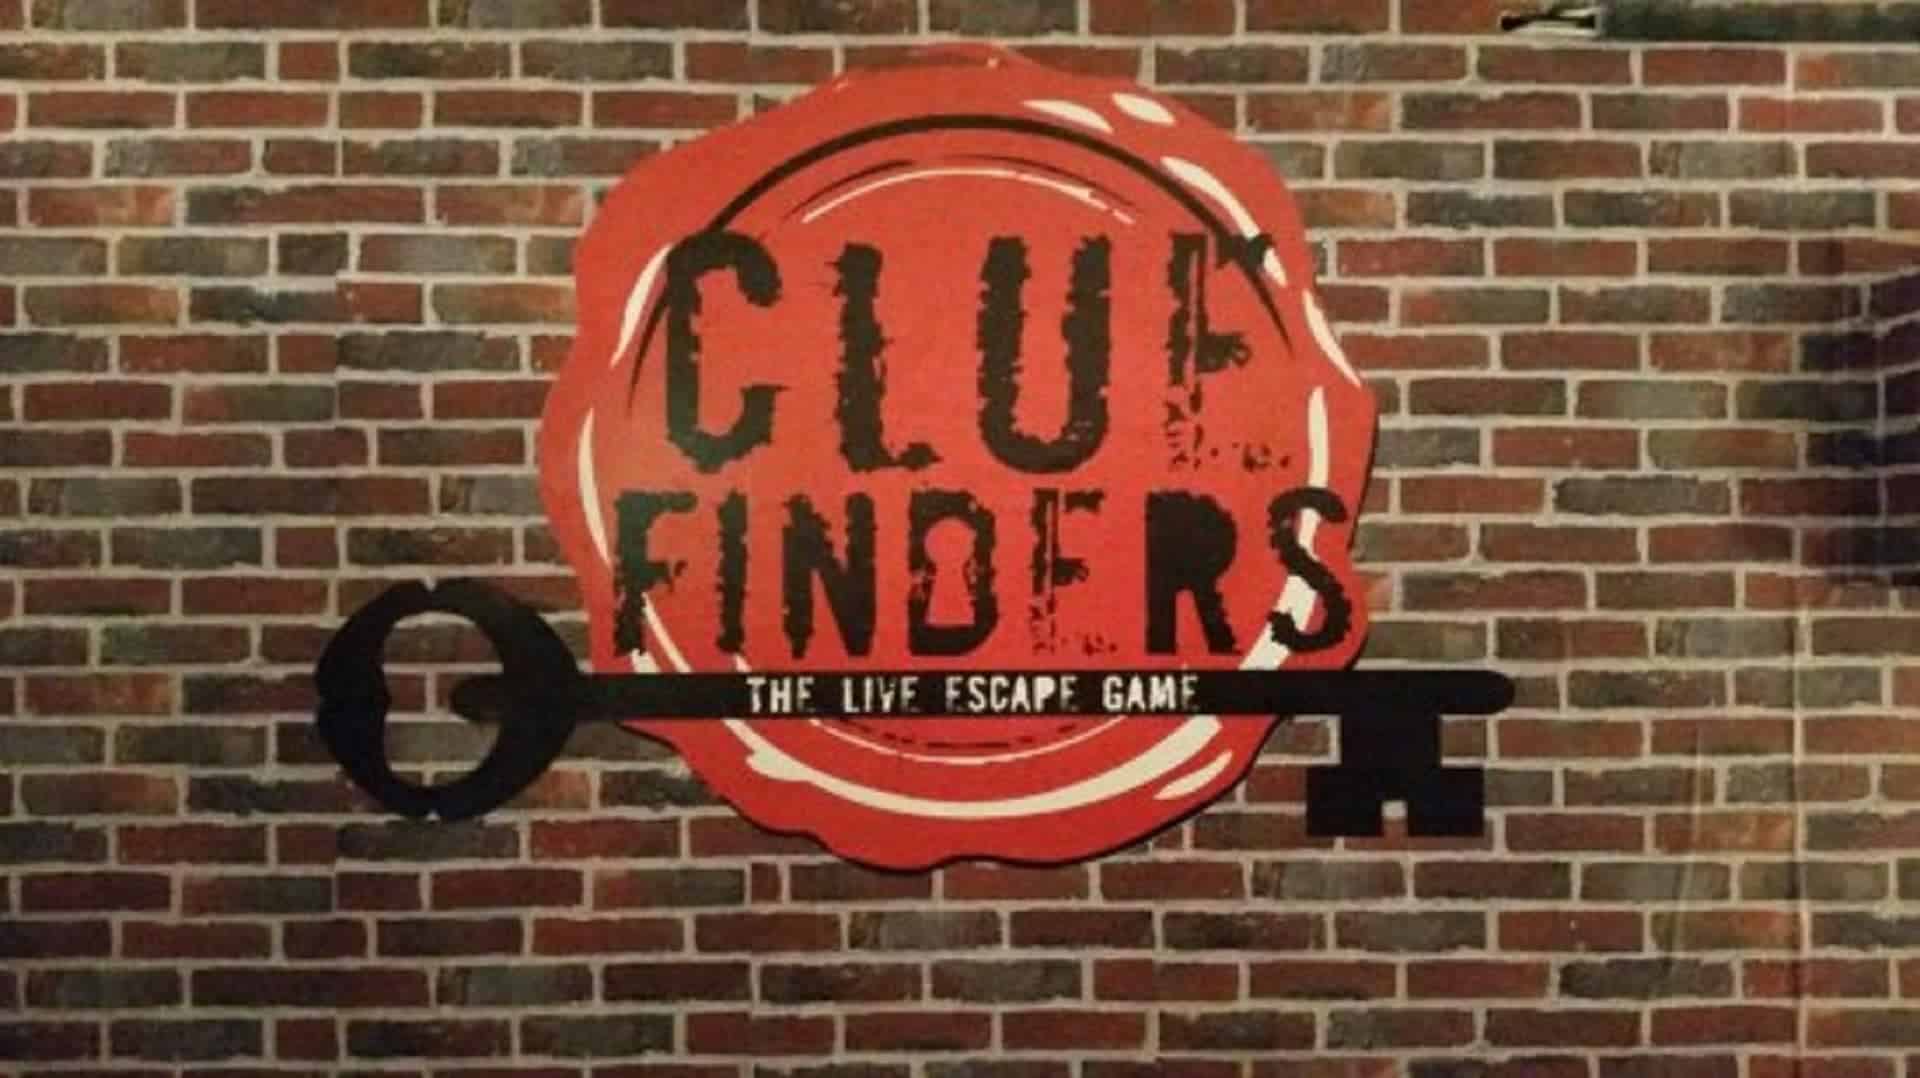 Clue Finders in UK